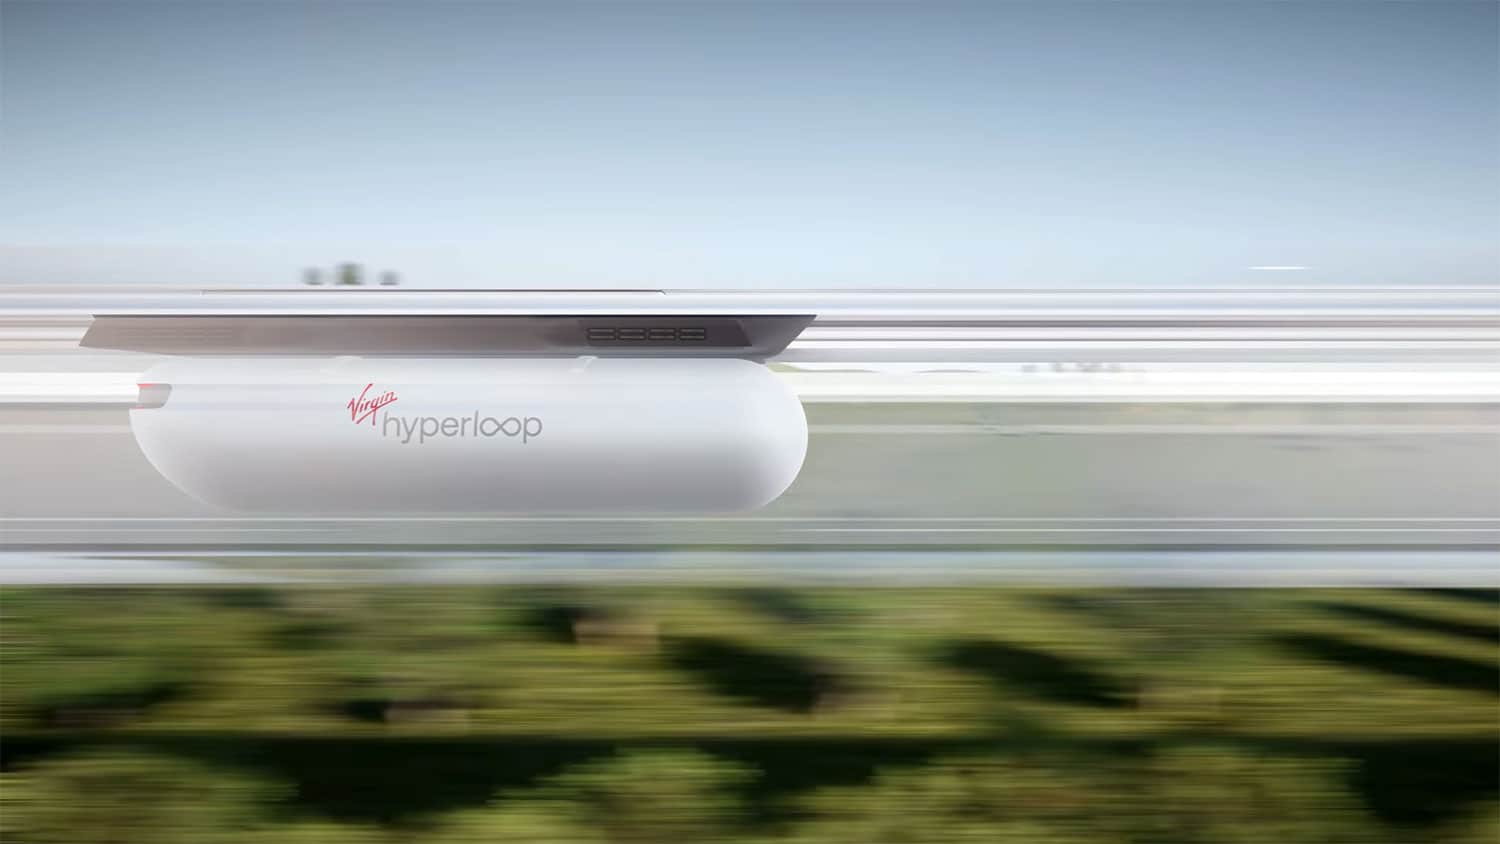 Virgin Hyperloop unveils how its hyperloop concept will work in commercial phase.